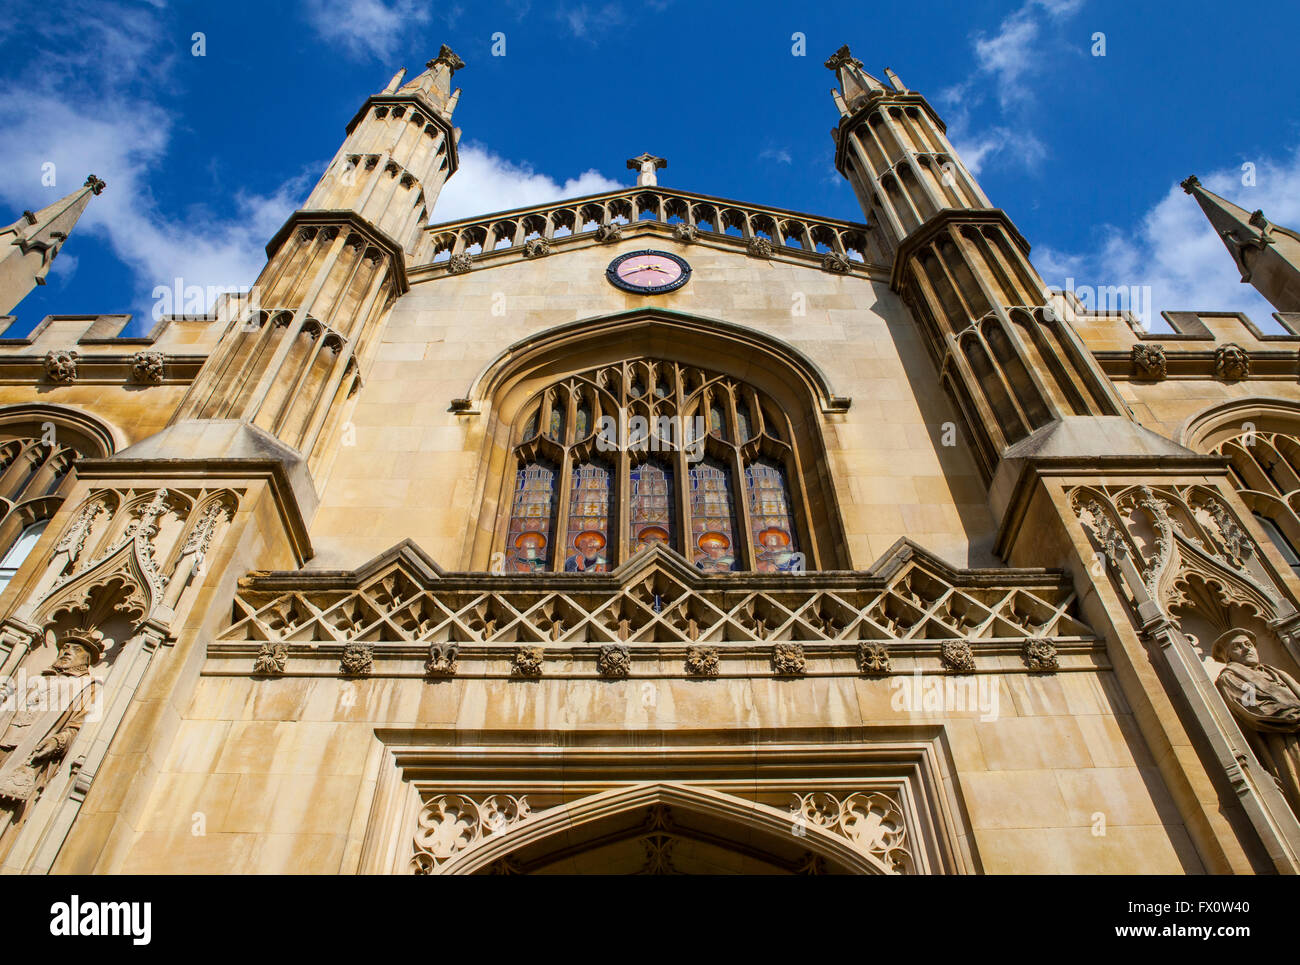 Ein Schuss von der Fassade des Corpus Christi College der Universität Cambridge in Cambridge, UK. Stockfoto